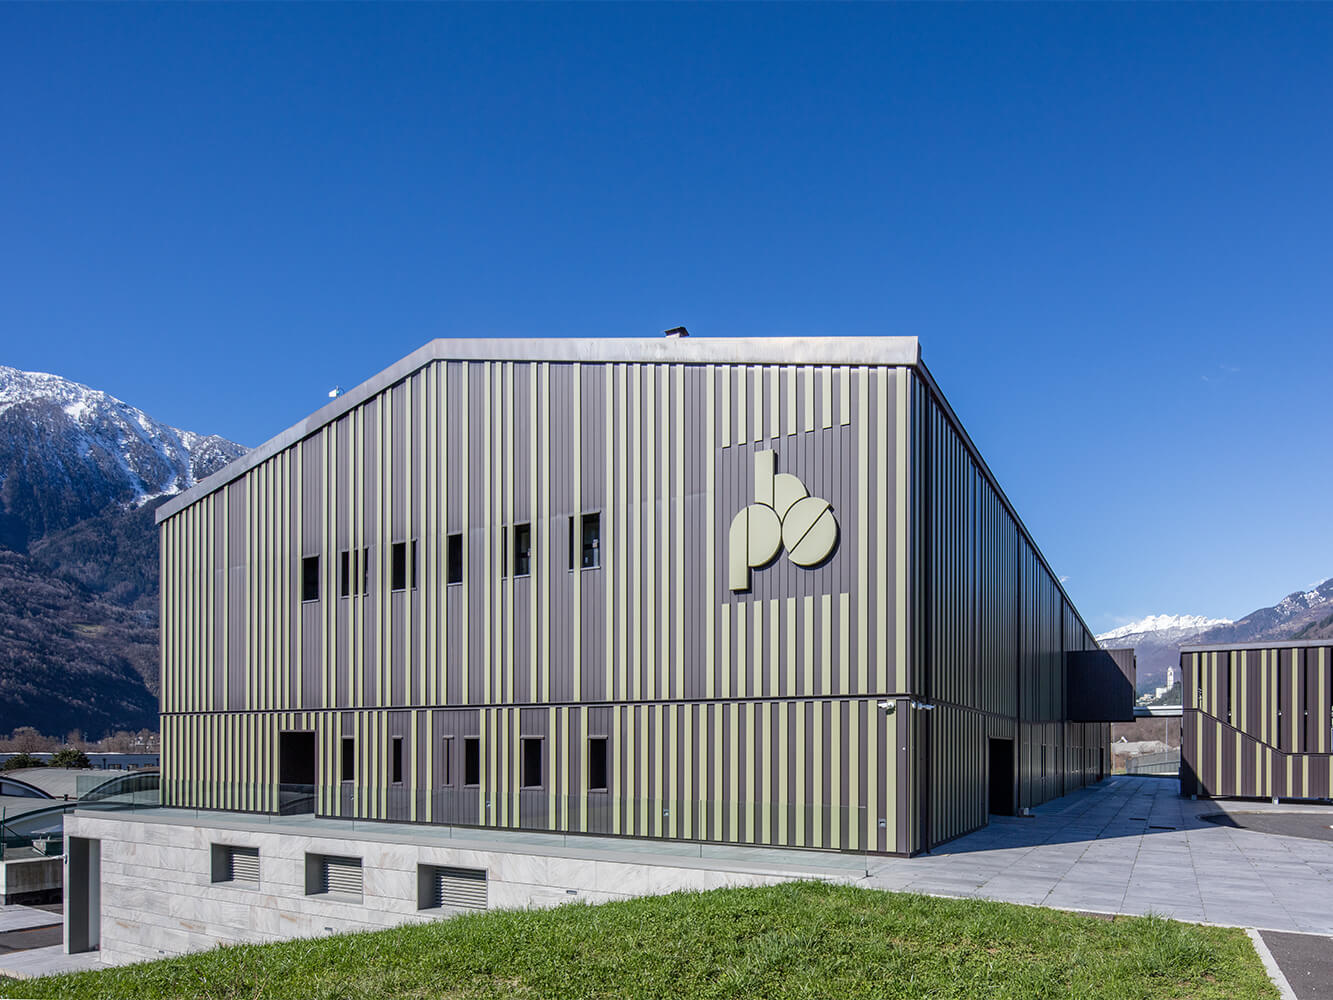 Banca Popolare di Sondrio – Centro Direzionale Multifunzionale – Berbenno di Valtellina (SO), Italy